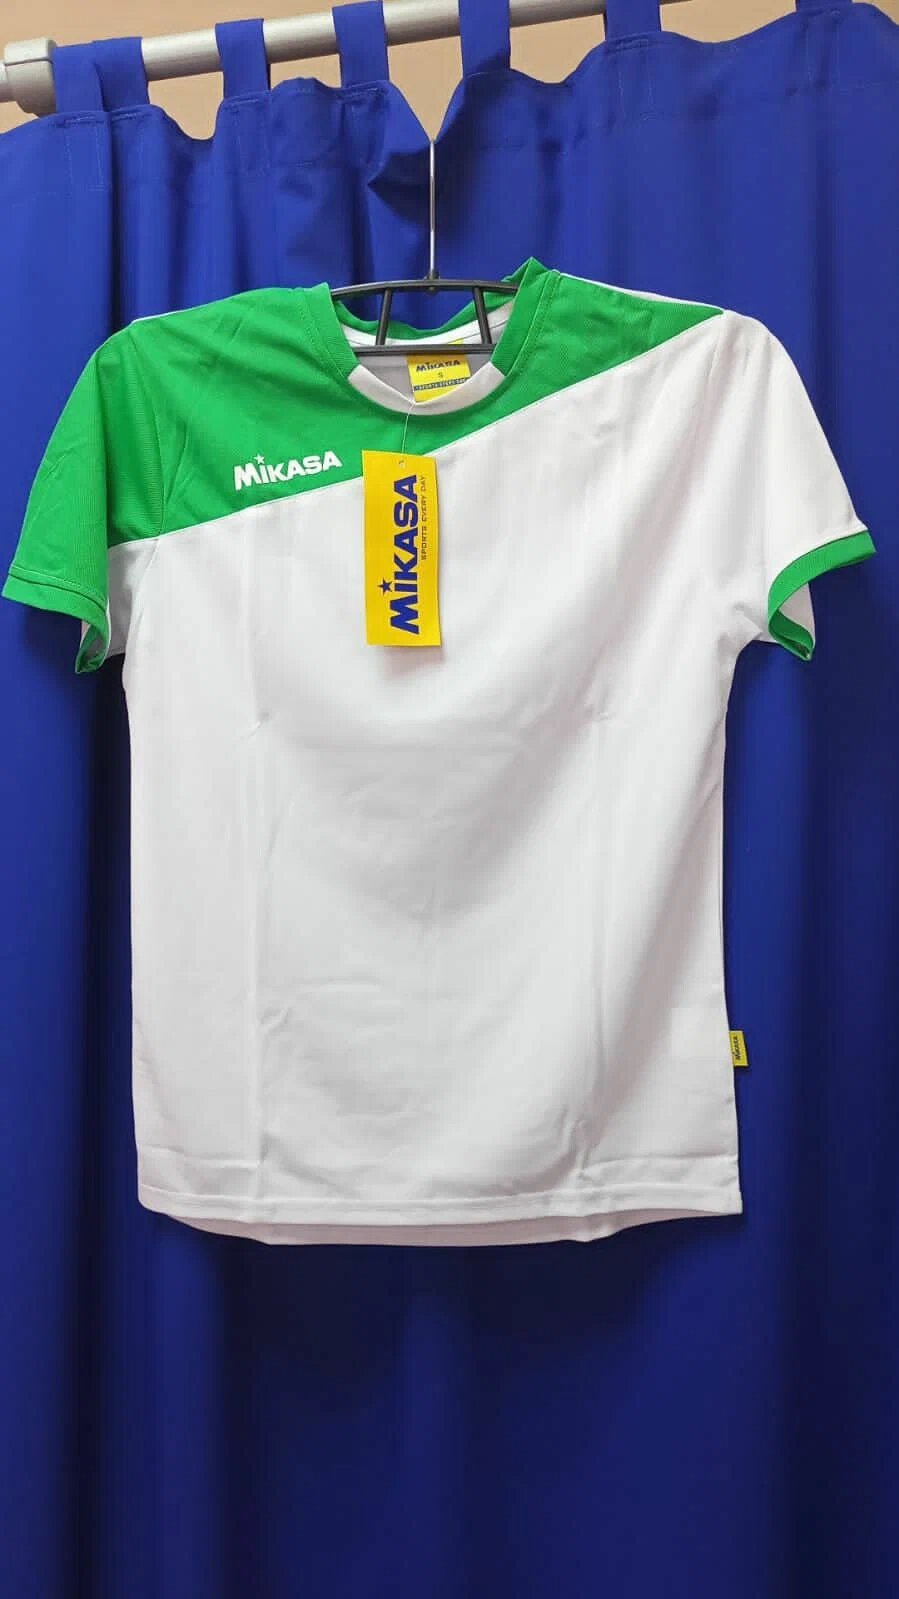 Для волейбола Мужская MIKASA размер S ( русский 46 ) форма ( майка + шорты ) волейбольная микаса бело-зелёная